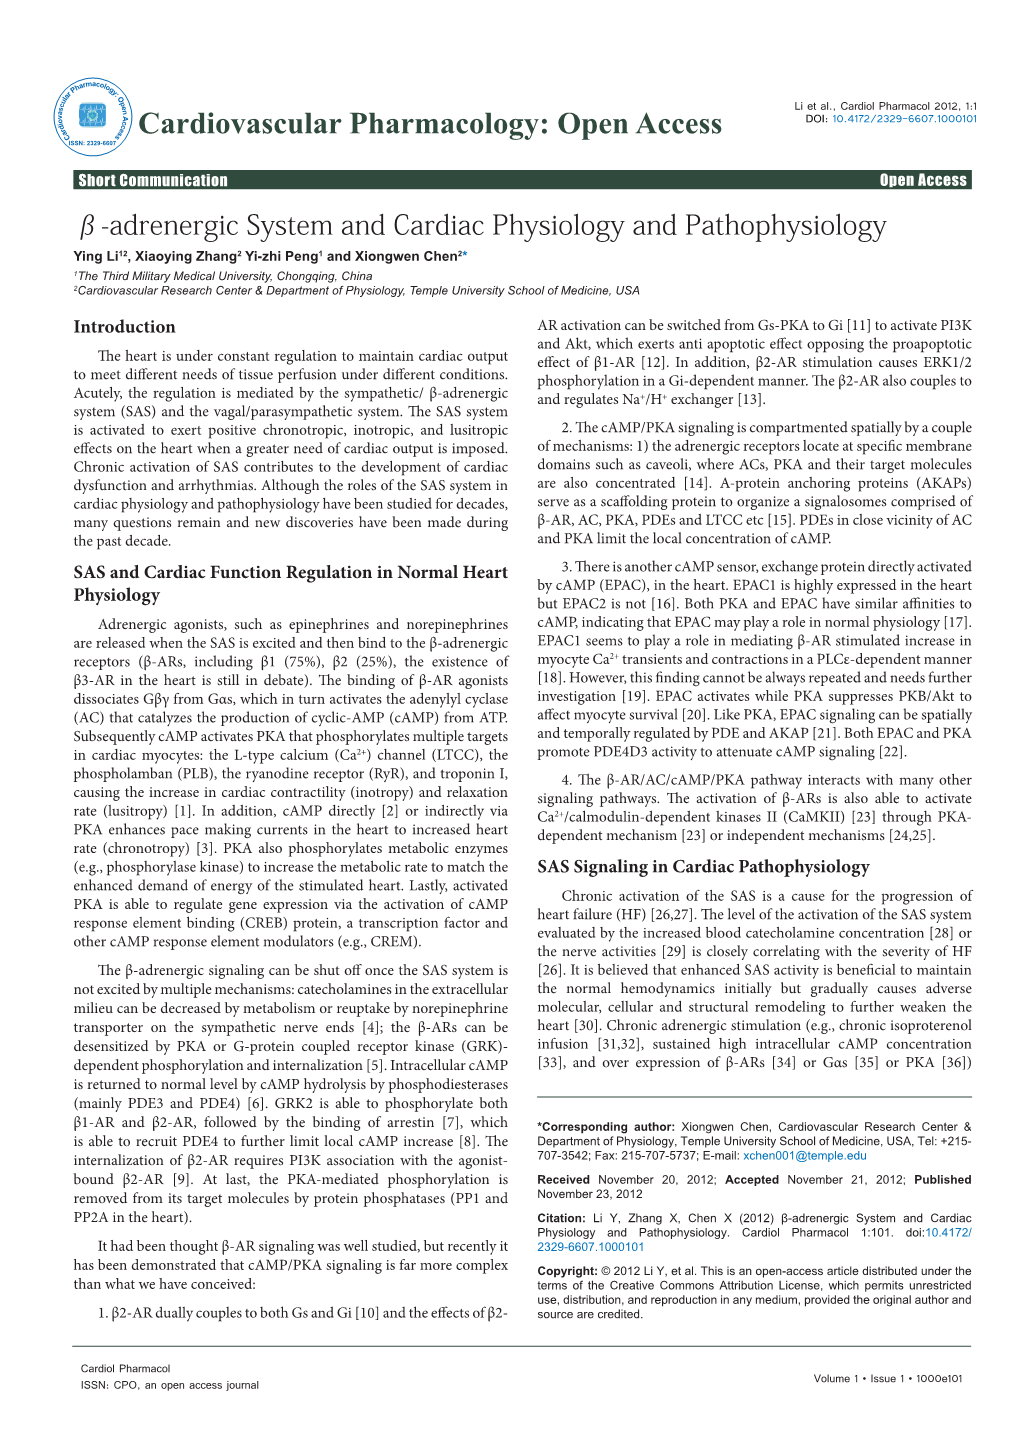 Β-Adrenergic System and Cardiac Physiology and Pathophysiology